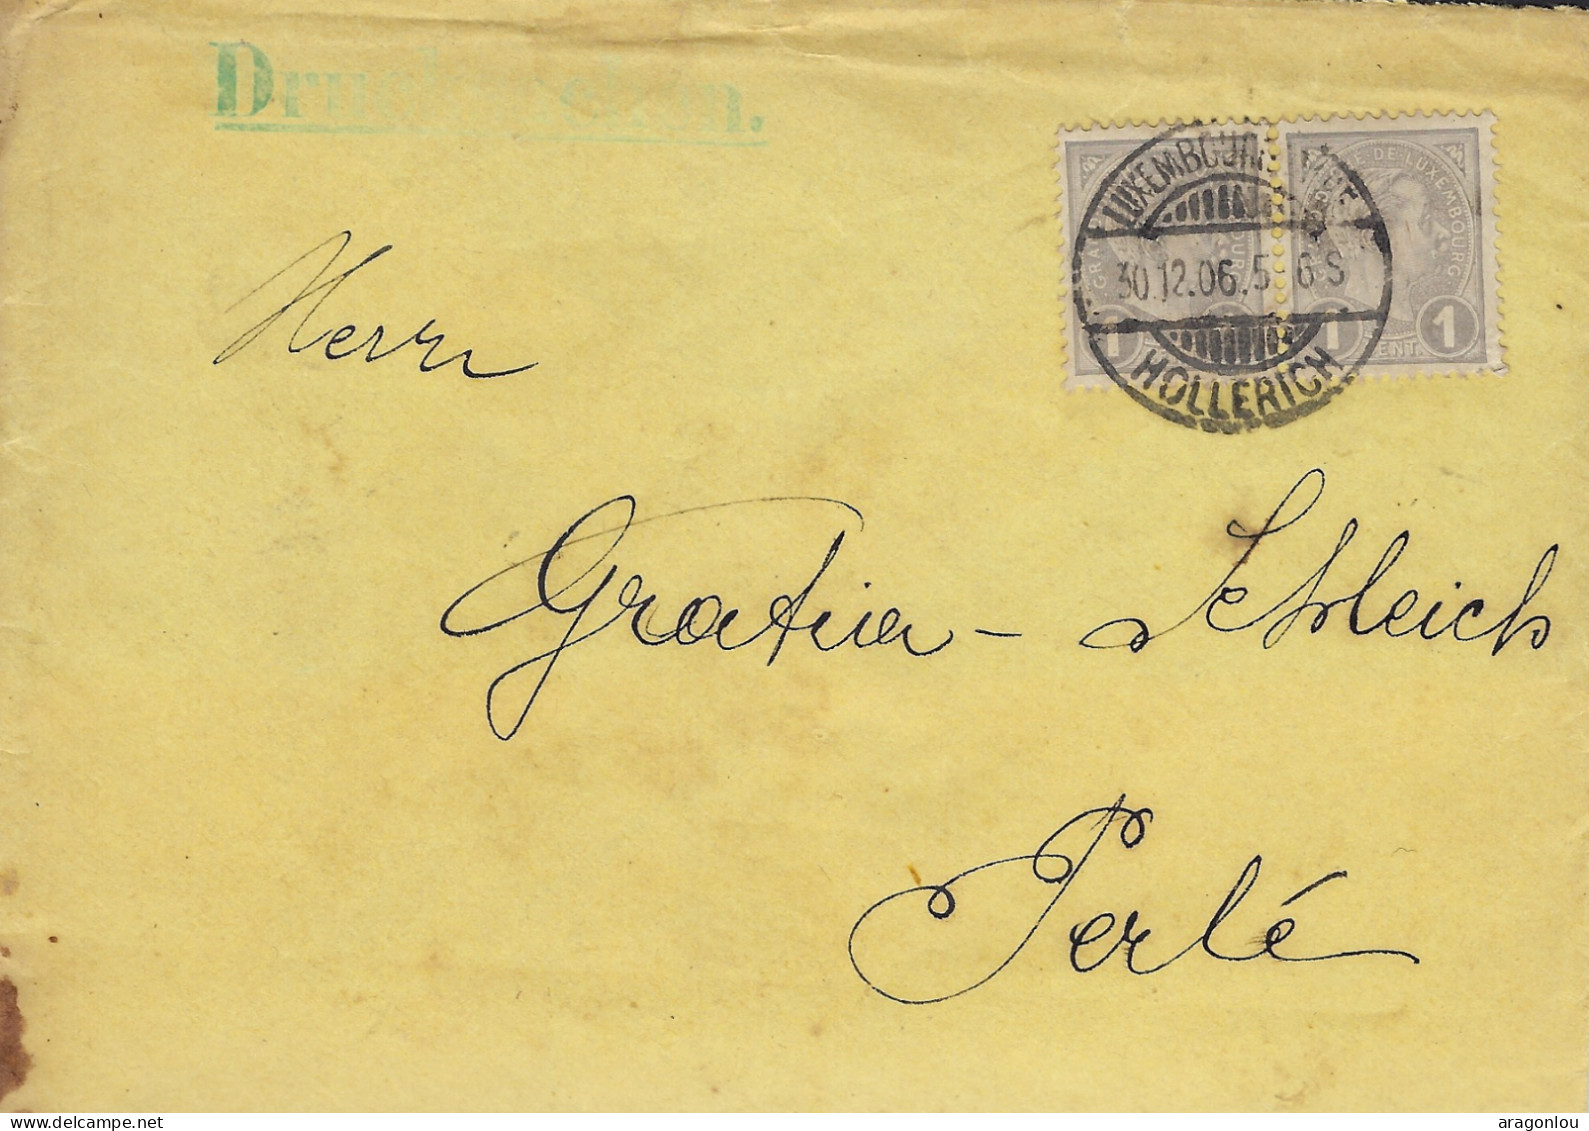 Luxembourg - Luxemburg - Lettre  1906  -  Adressiert An Herrn  GRATIA - SCHLEICH , PERLÉ - Cartas & Documentos